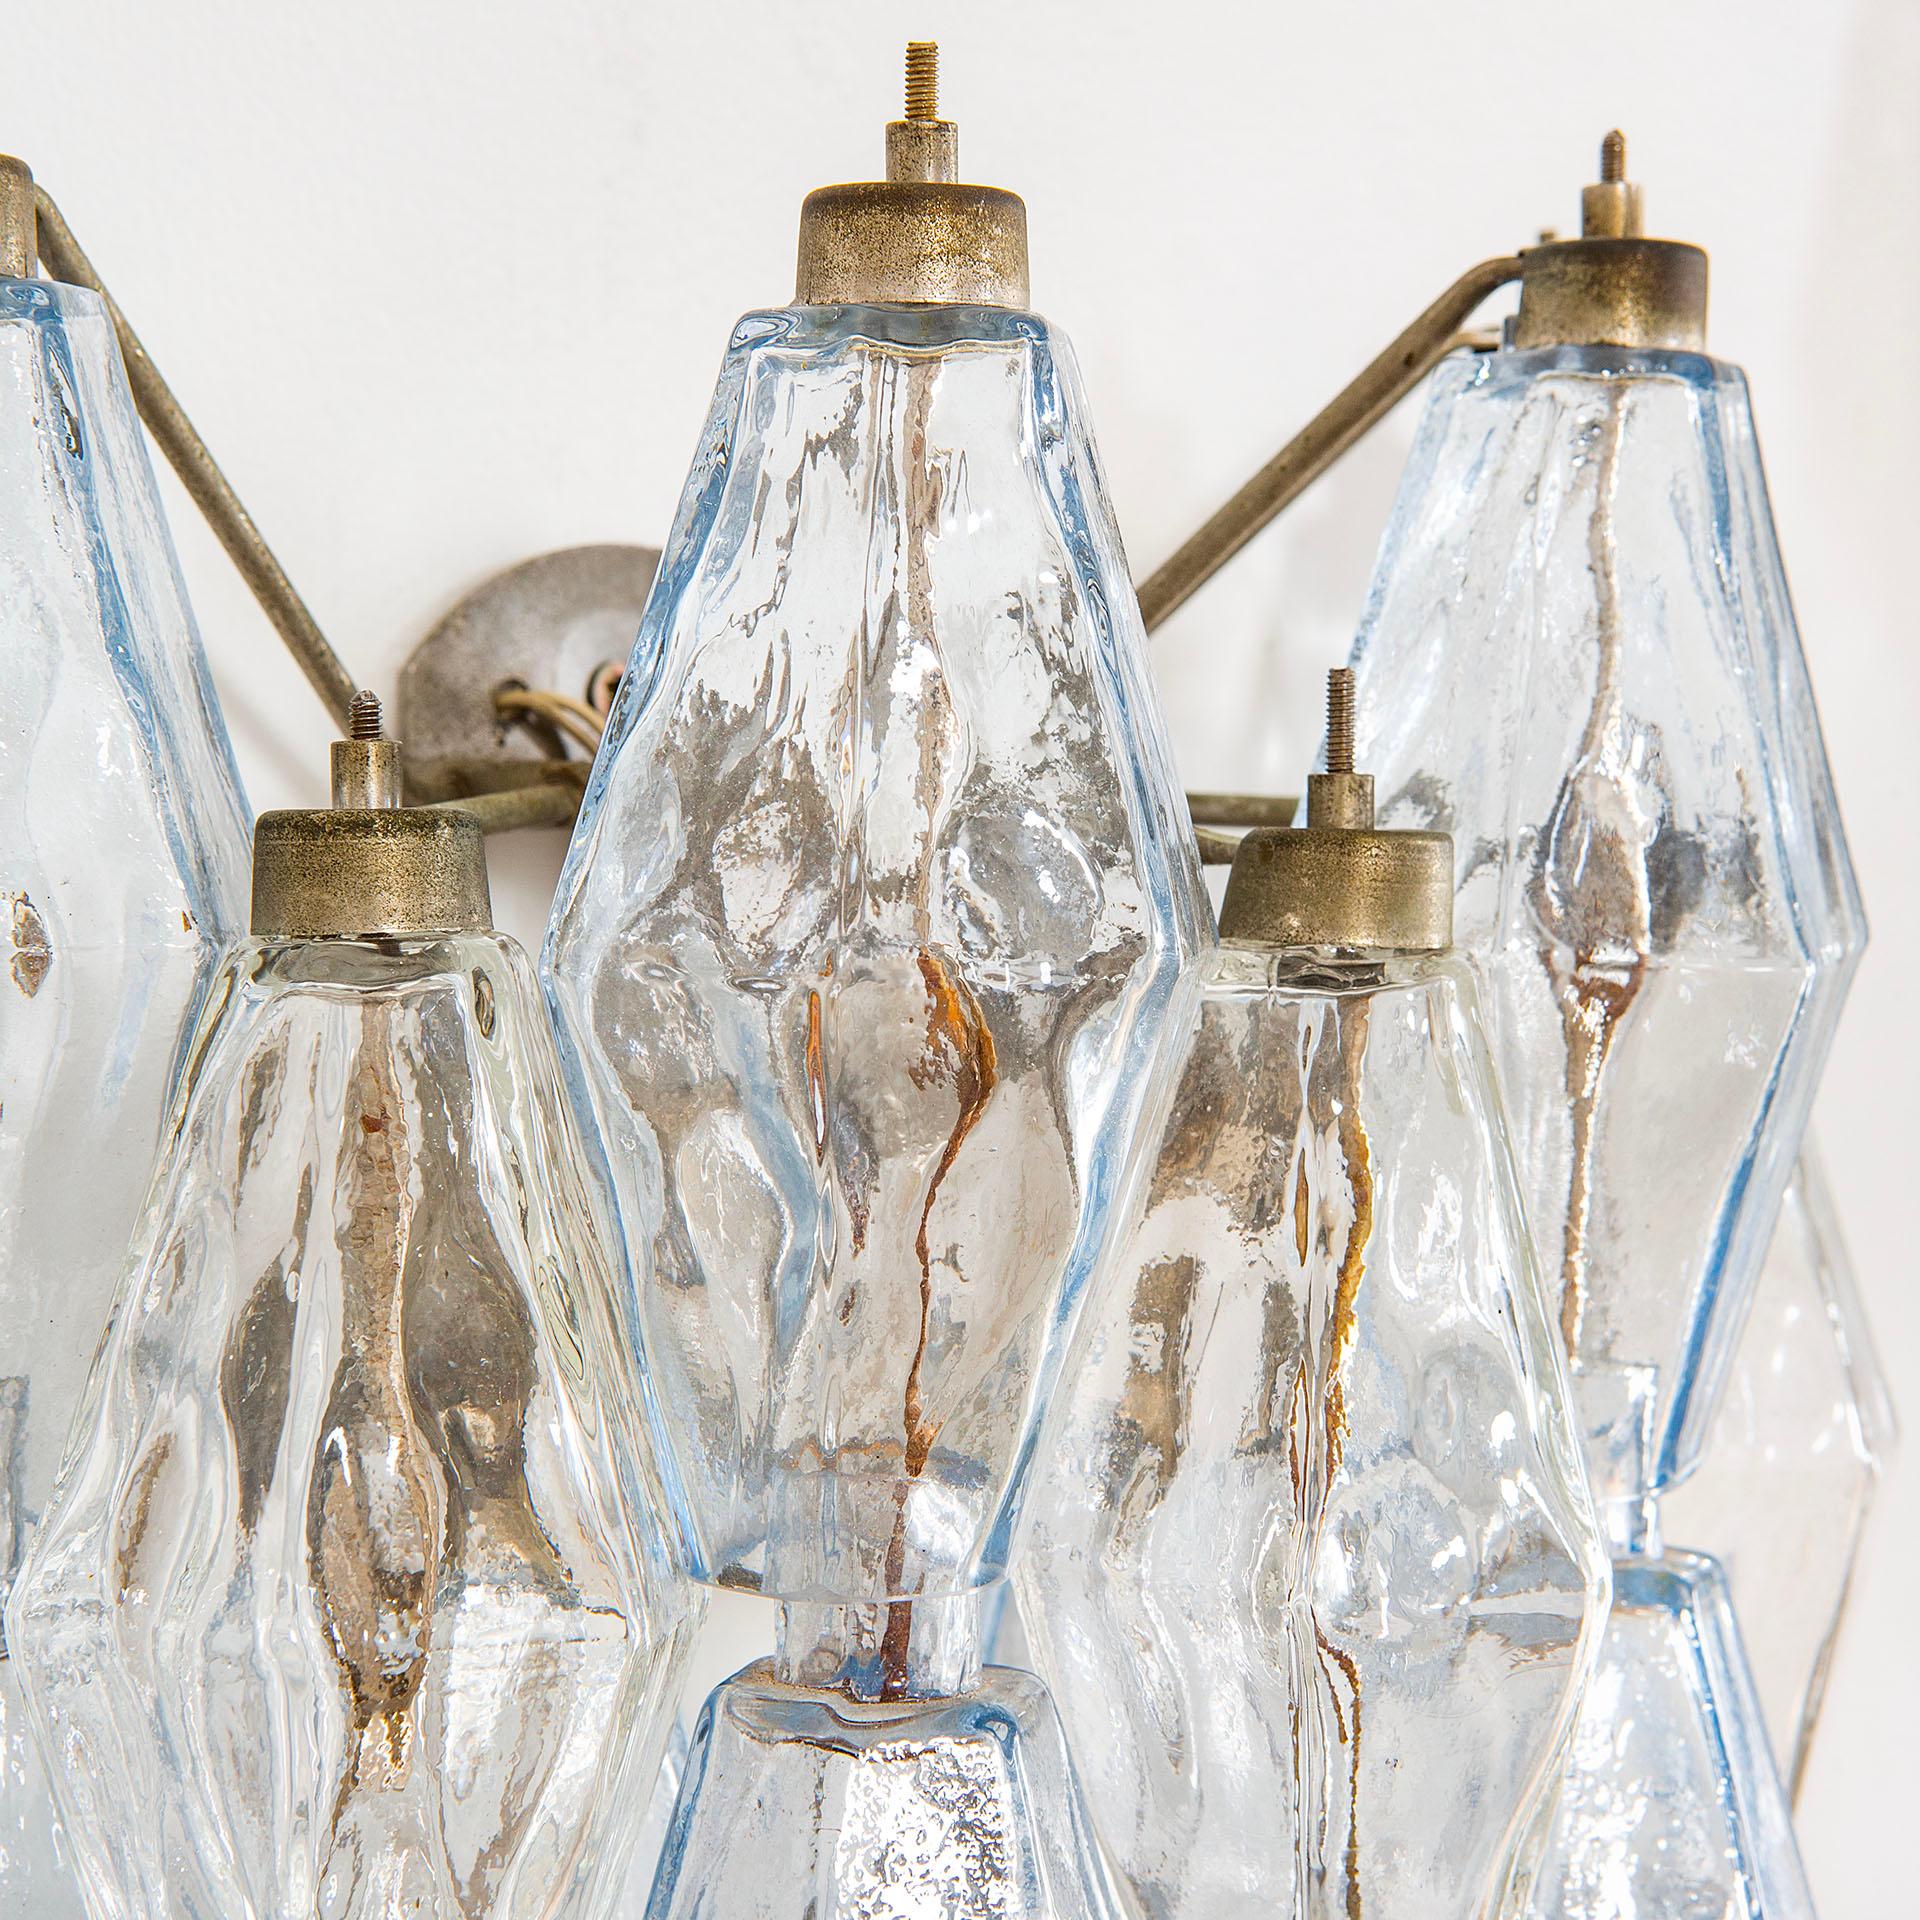 Italian 20th Century Venini Pair of Wall Lamps Mod Poliedri in Colored Murano Glass, 60s For Sale